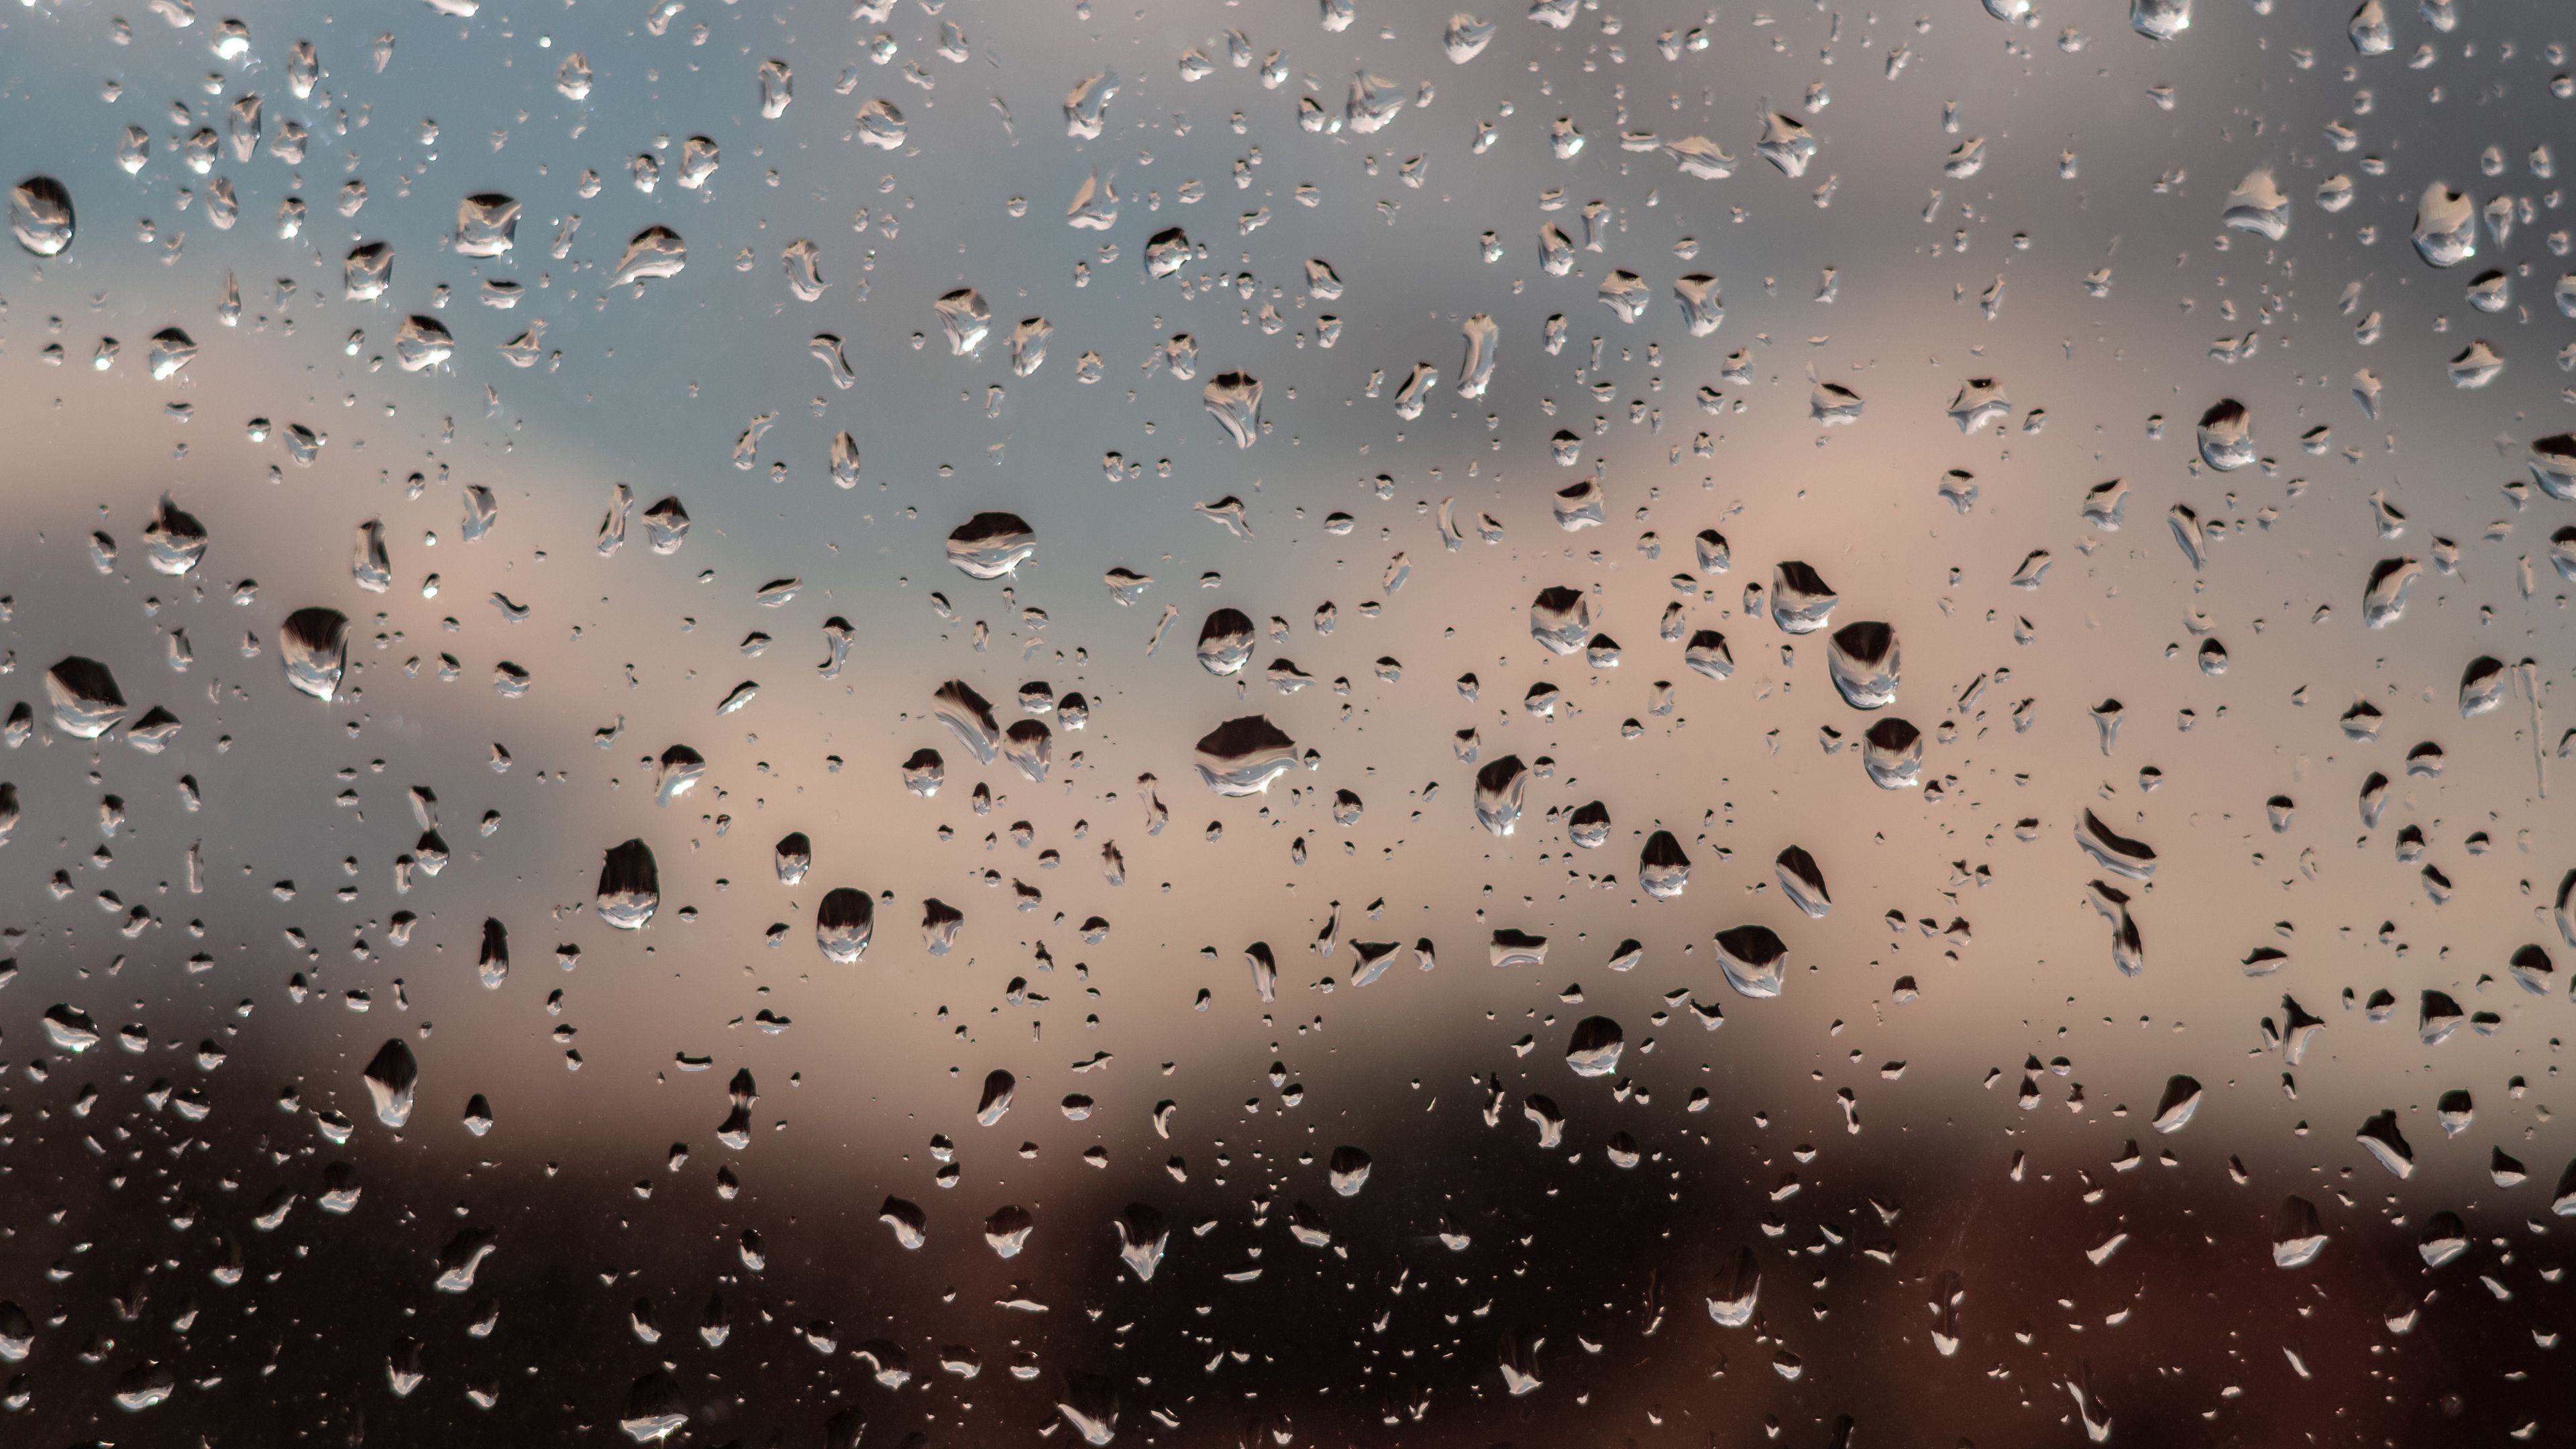 Download wallpaper 3840x2160 drops, glass, rain, window, moisture, blur 4k  uhd 16:9 hd background